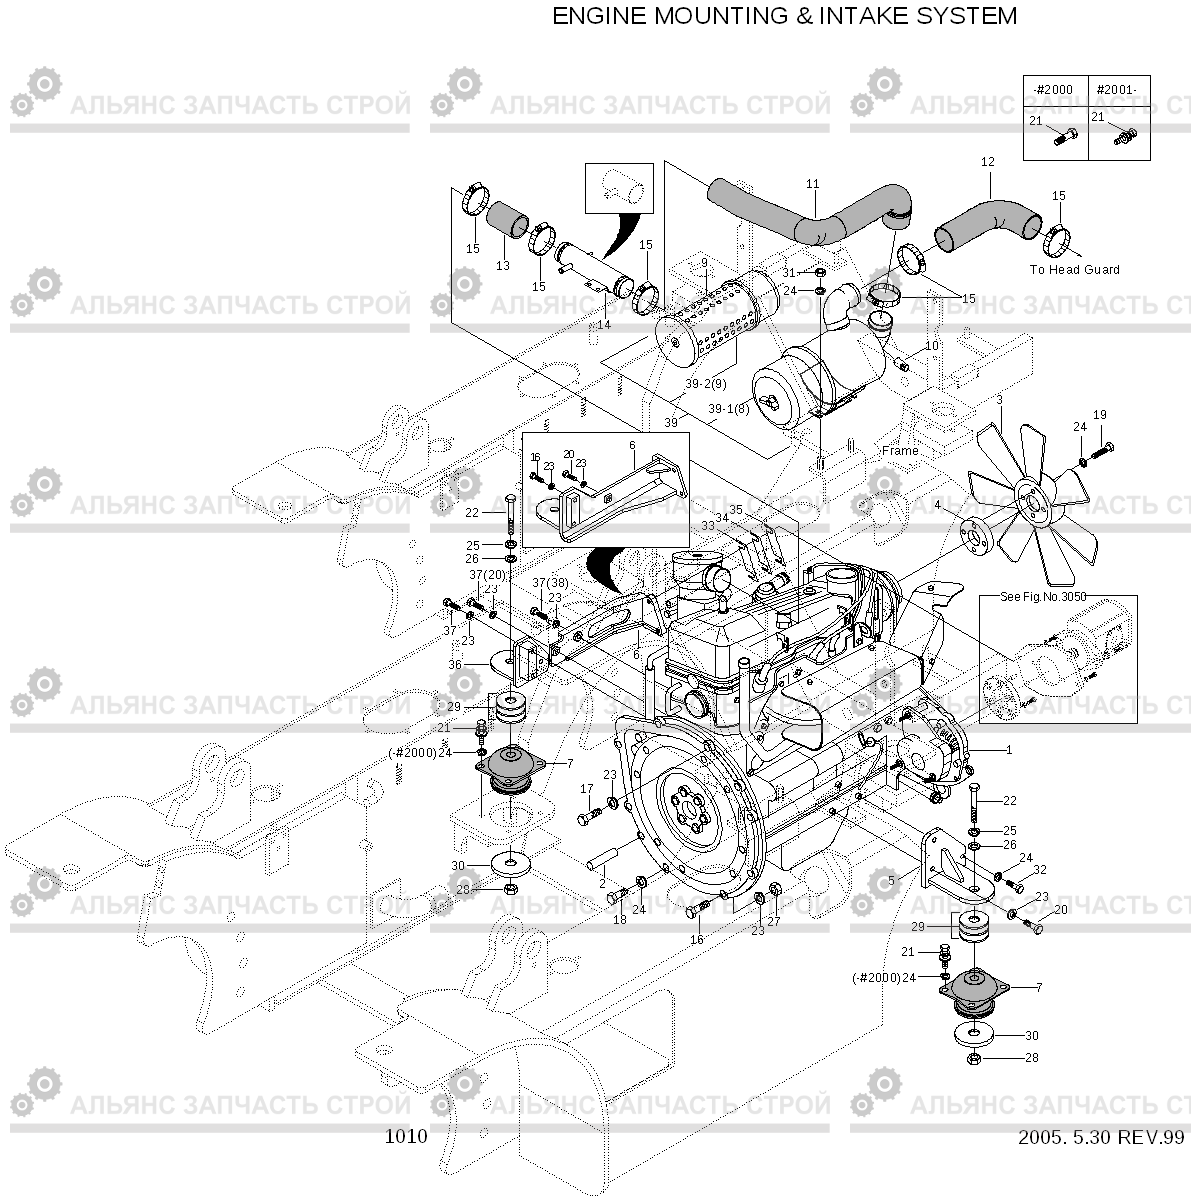 1010 ENGINE MOUNTING & AIR INTAKE SYSTEM HLF15/18II, Hyundai